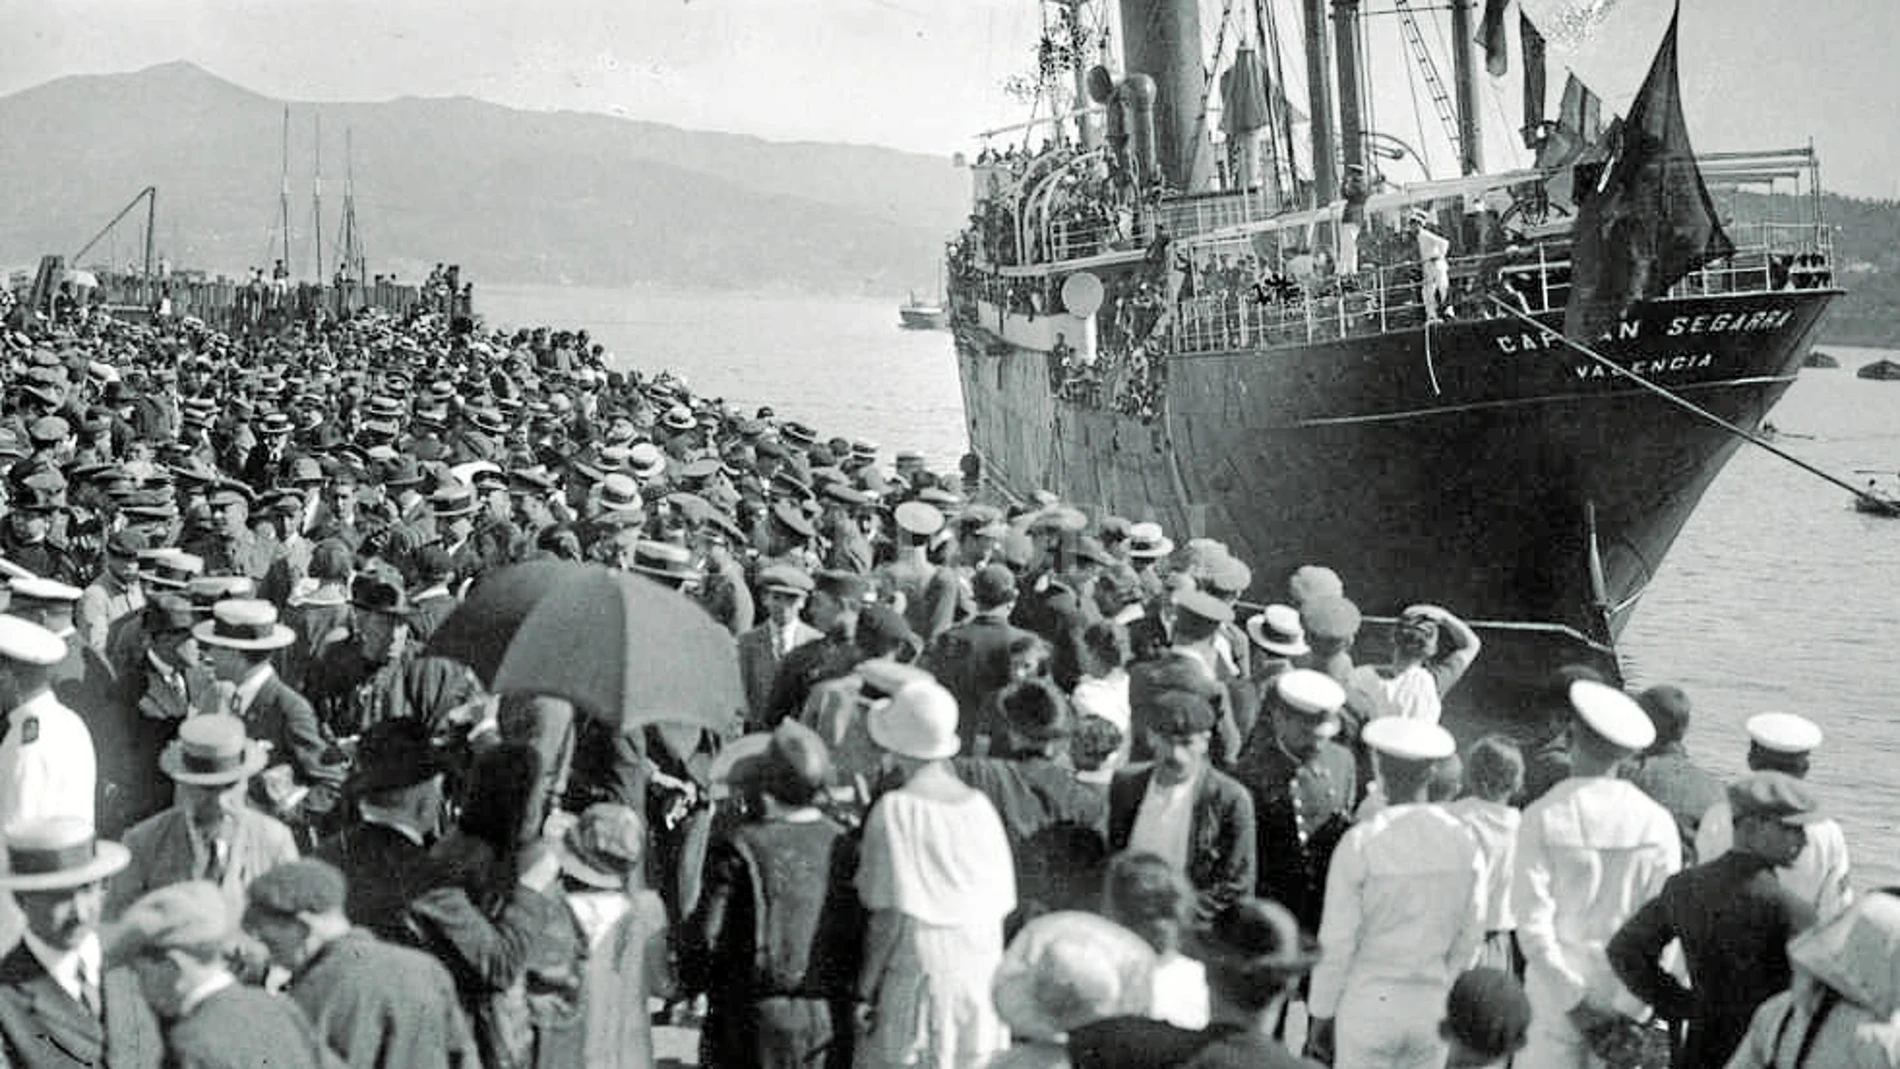 El barco Capitán Segarra fue un bote lleno de inmigrantes que arribó a las costas argentinas en el siglo XX